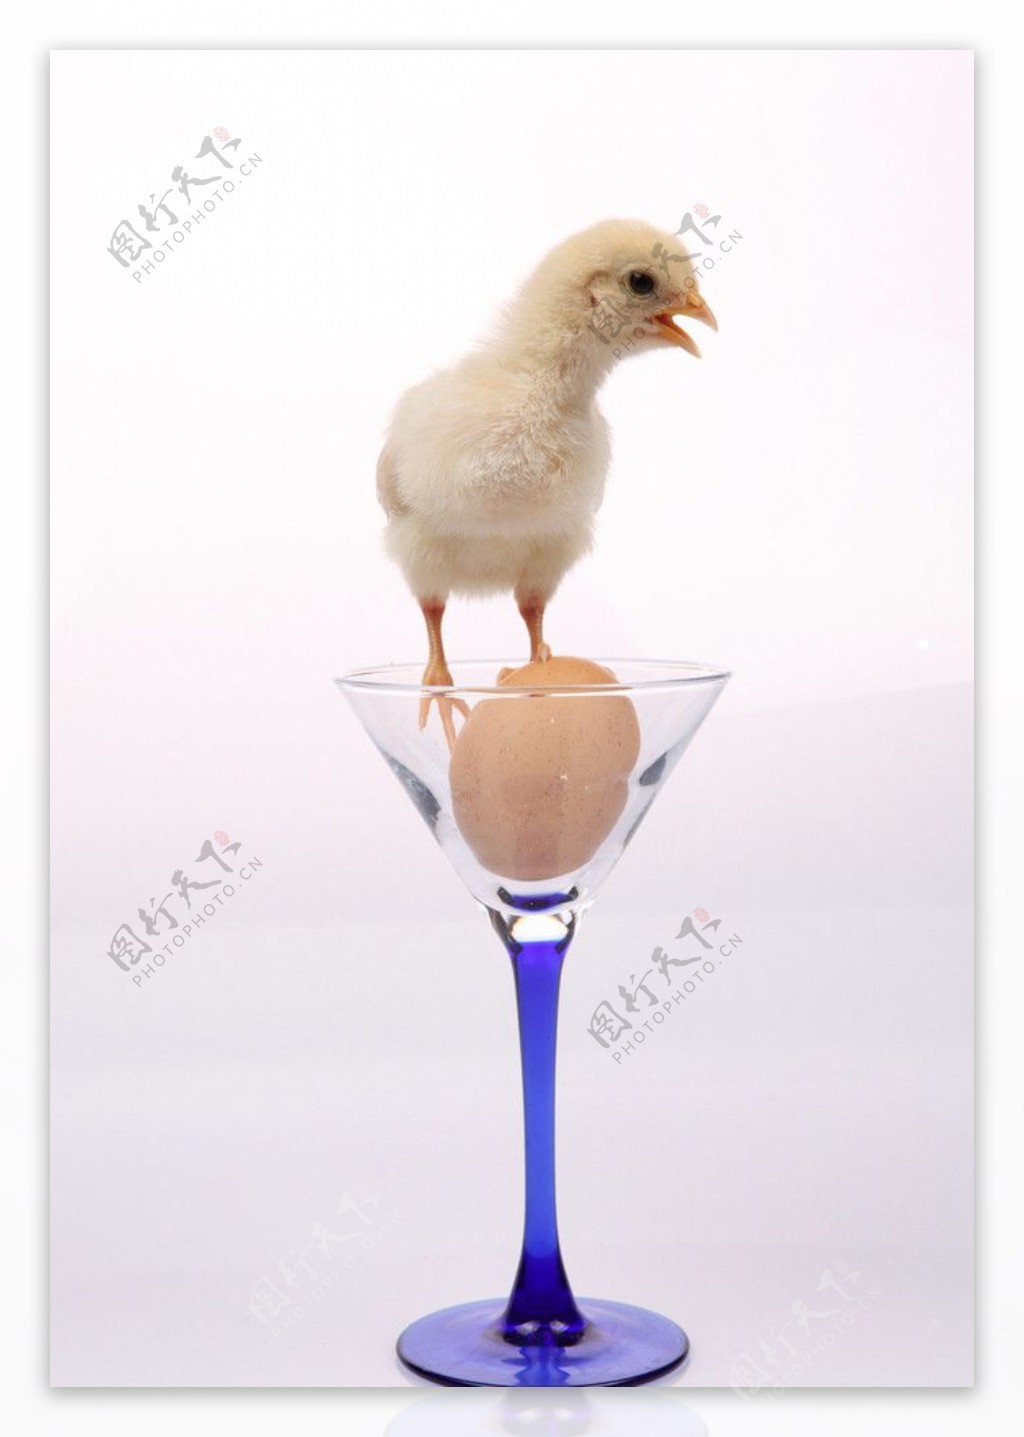 玻璃杯中的小鸡图片